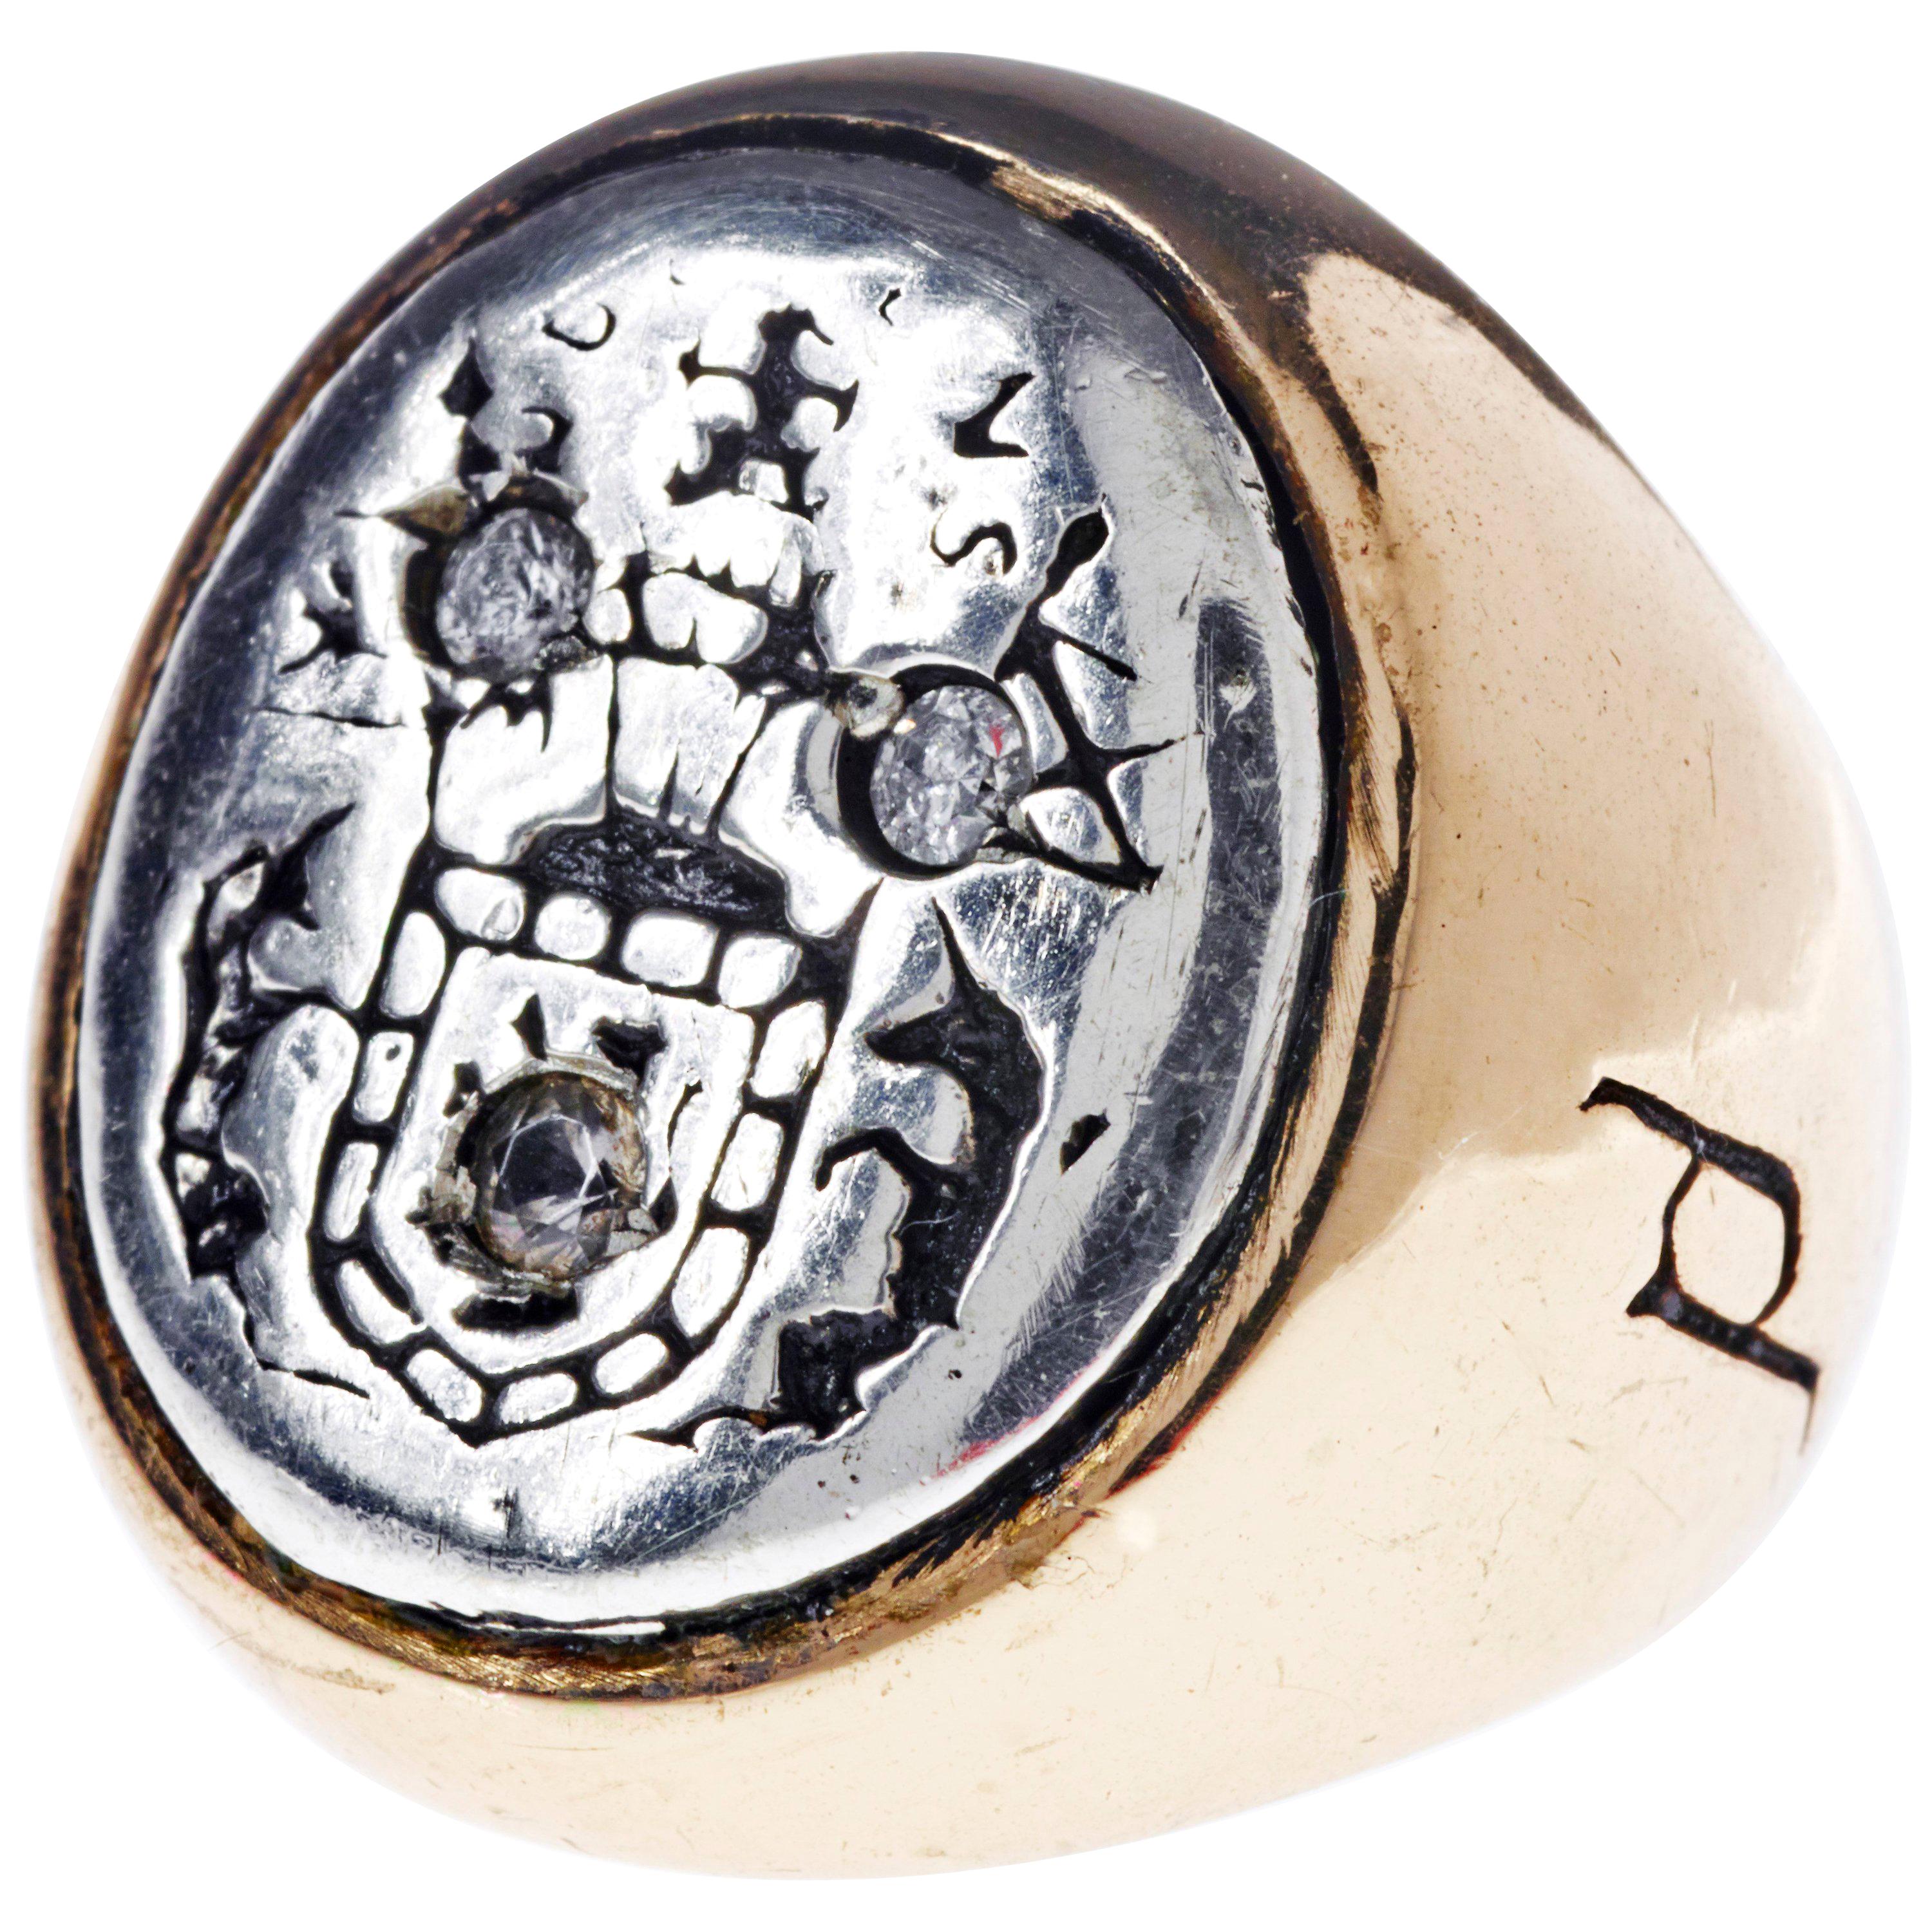 L'aigue-marine Crest Signet Ring Sterling Silver Bronze J Dauphin peut être porté par les femmes ou les hommes.

Inspiré de la bague de la reine Marie d'Écosse. Bague sigillaire en or ; gravée ; épaules ornées de fleurs et de feuilles. Lunette ovale